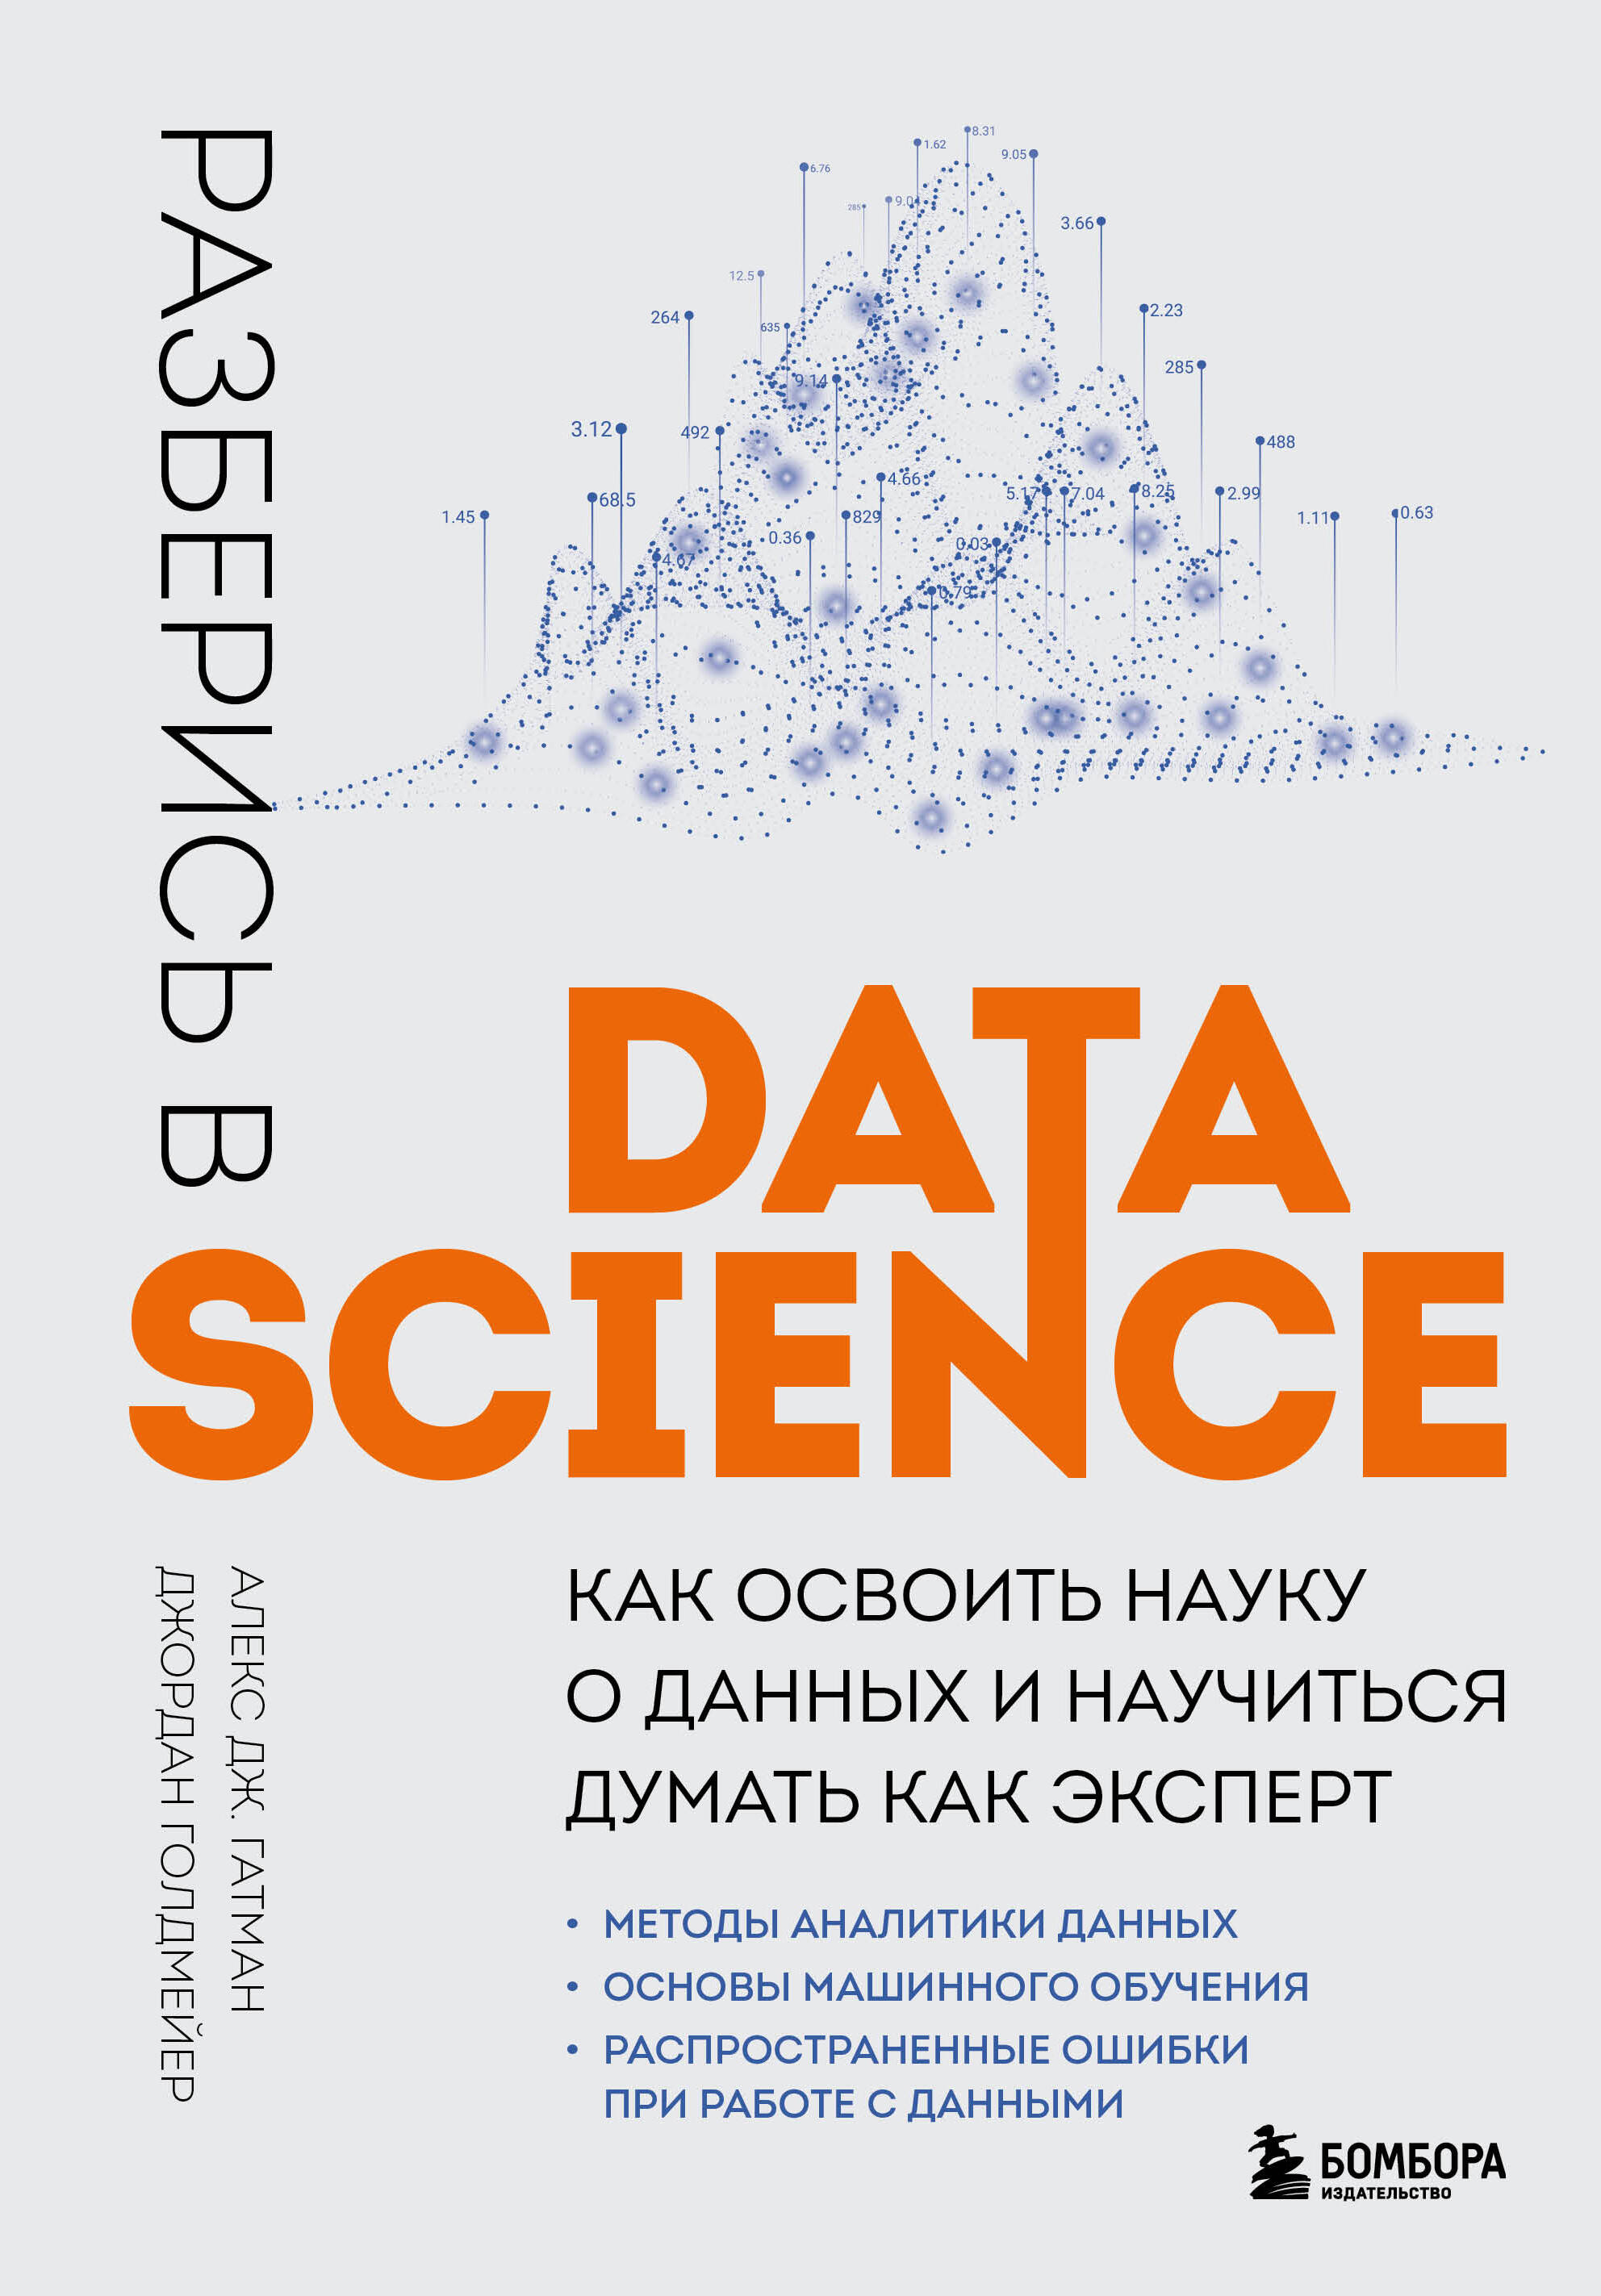 как стать аналитиком данных и стартовать в data science Гатман Алекс Дж., Голдмейер Джордан Разберись в Data Science: как освоить науку о данных и научиться думать как эксперт